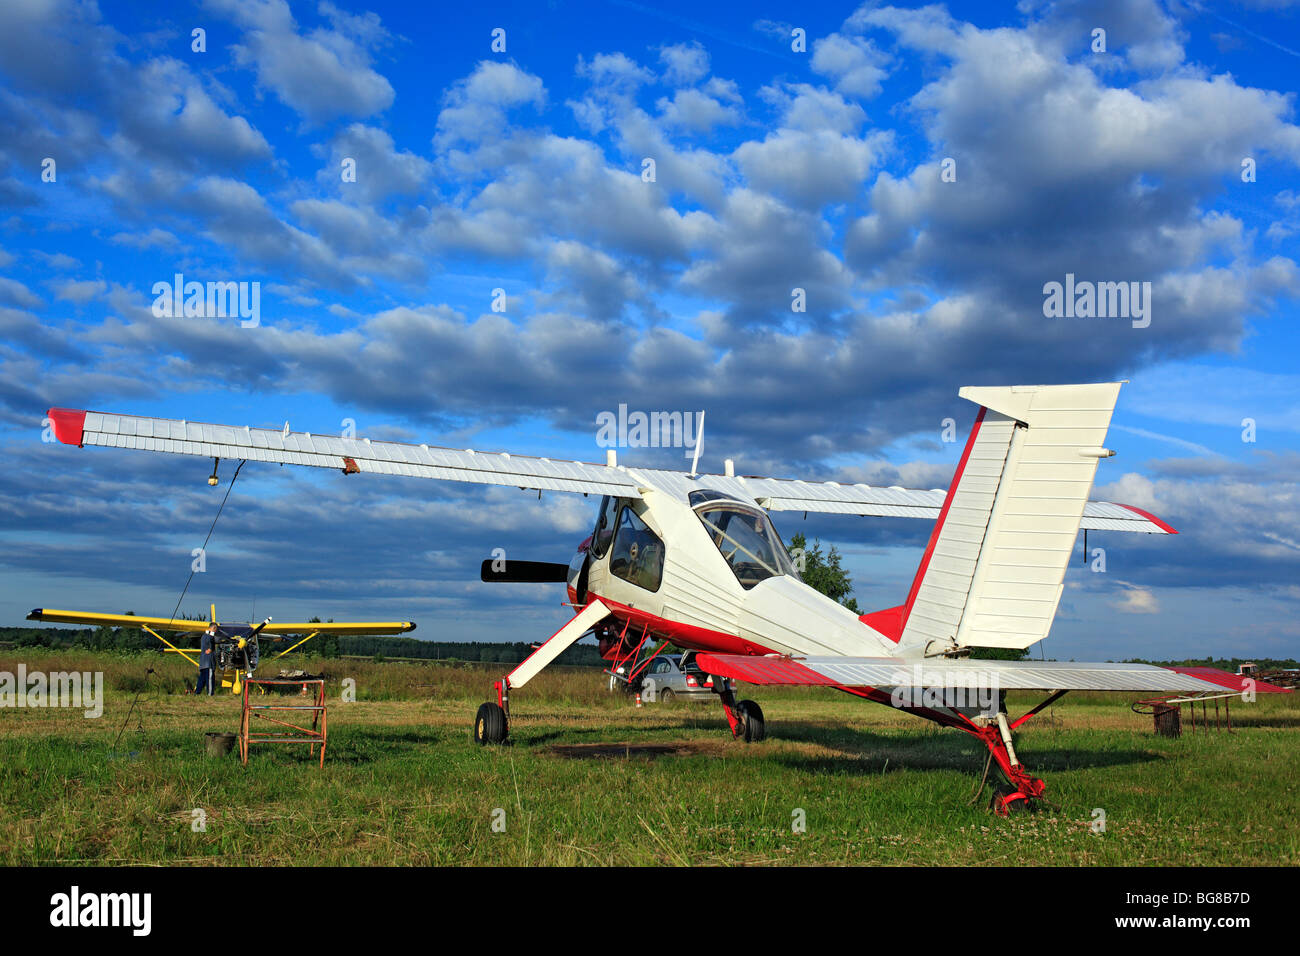 Avions avion léger parqués sur un terrain d'herbe, Russie Banque D'Images